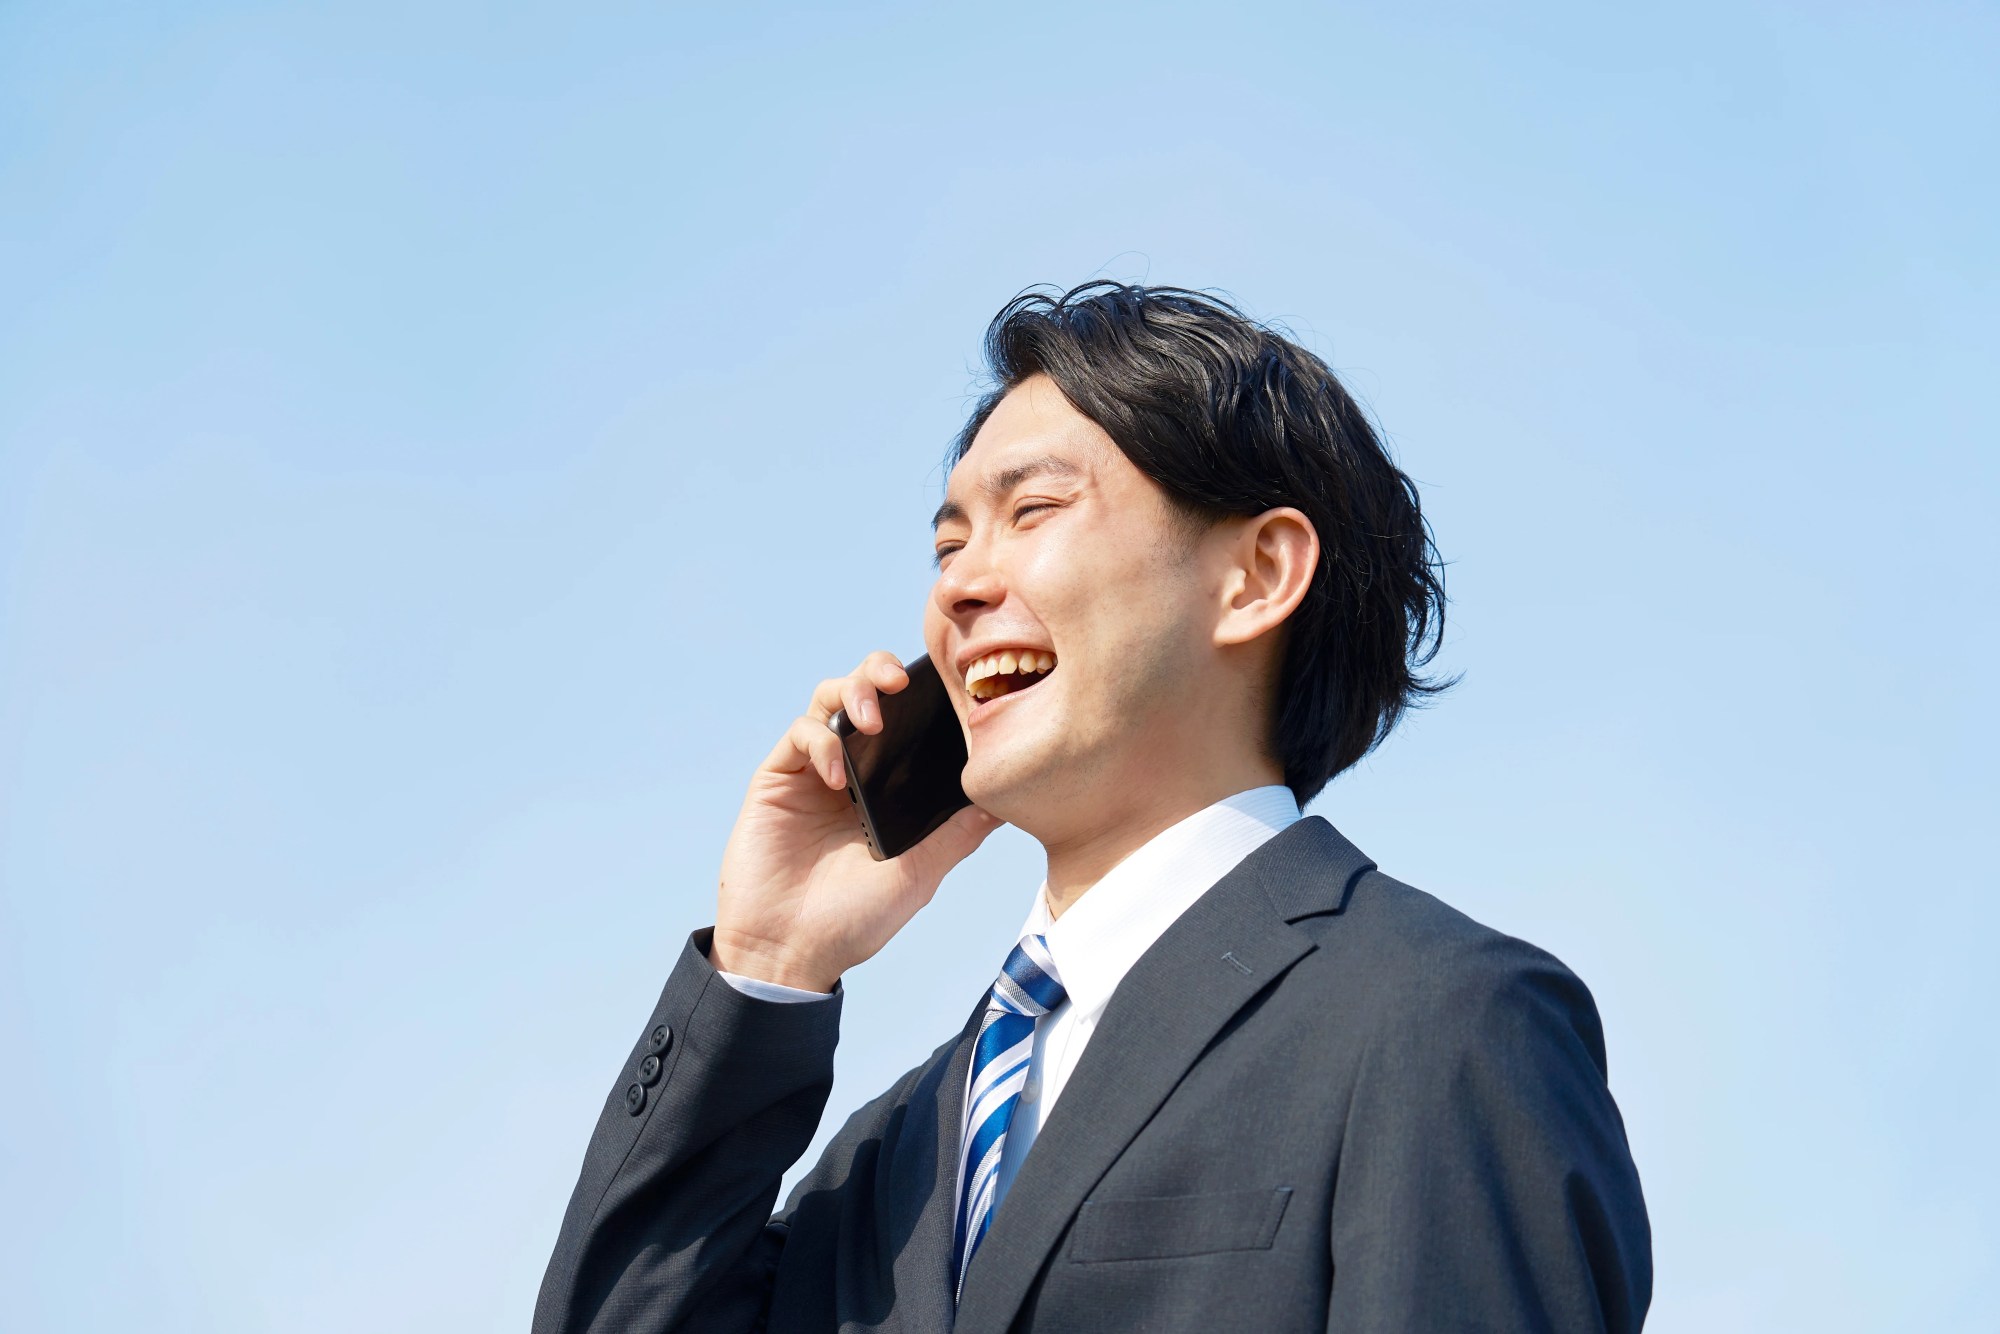 「解決策」のイメージ_笑顔で電話している男性